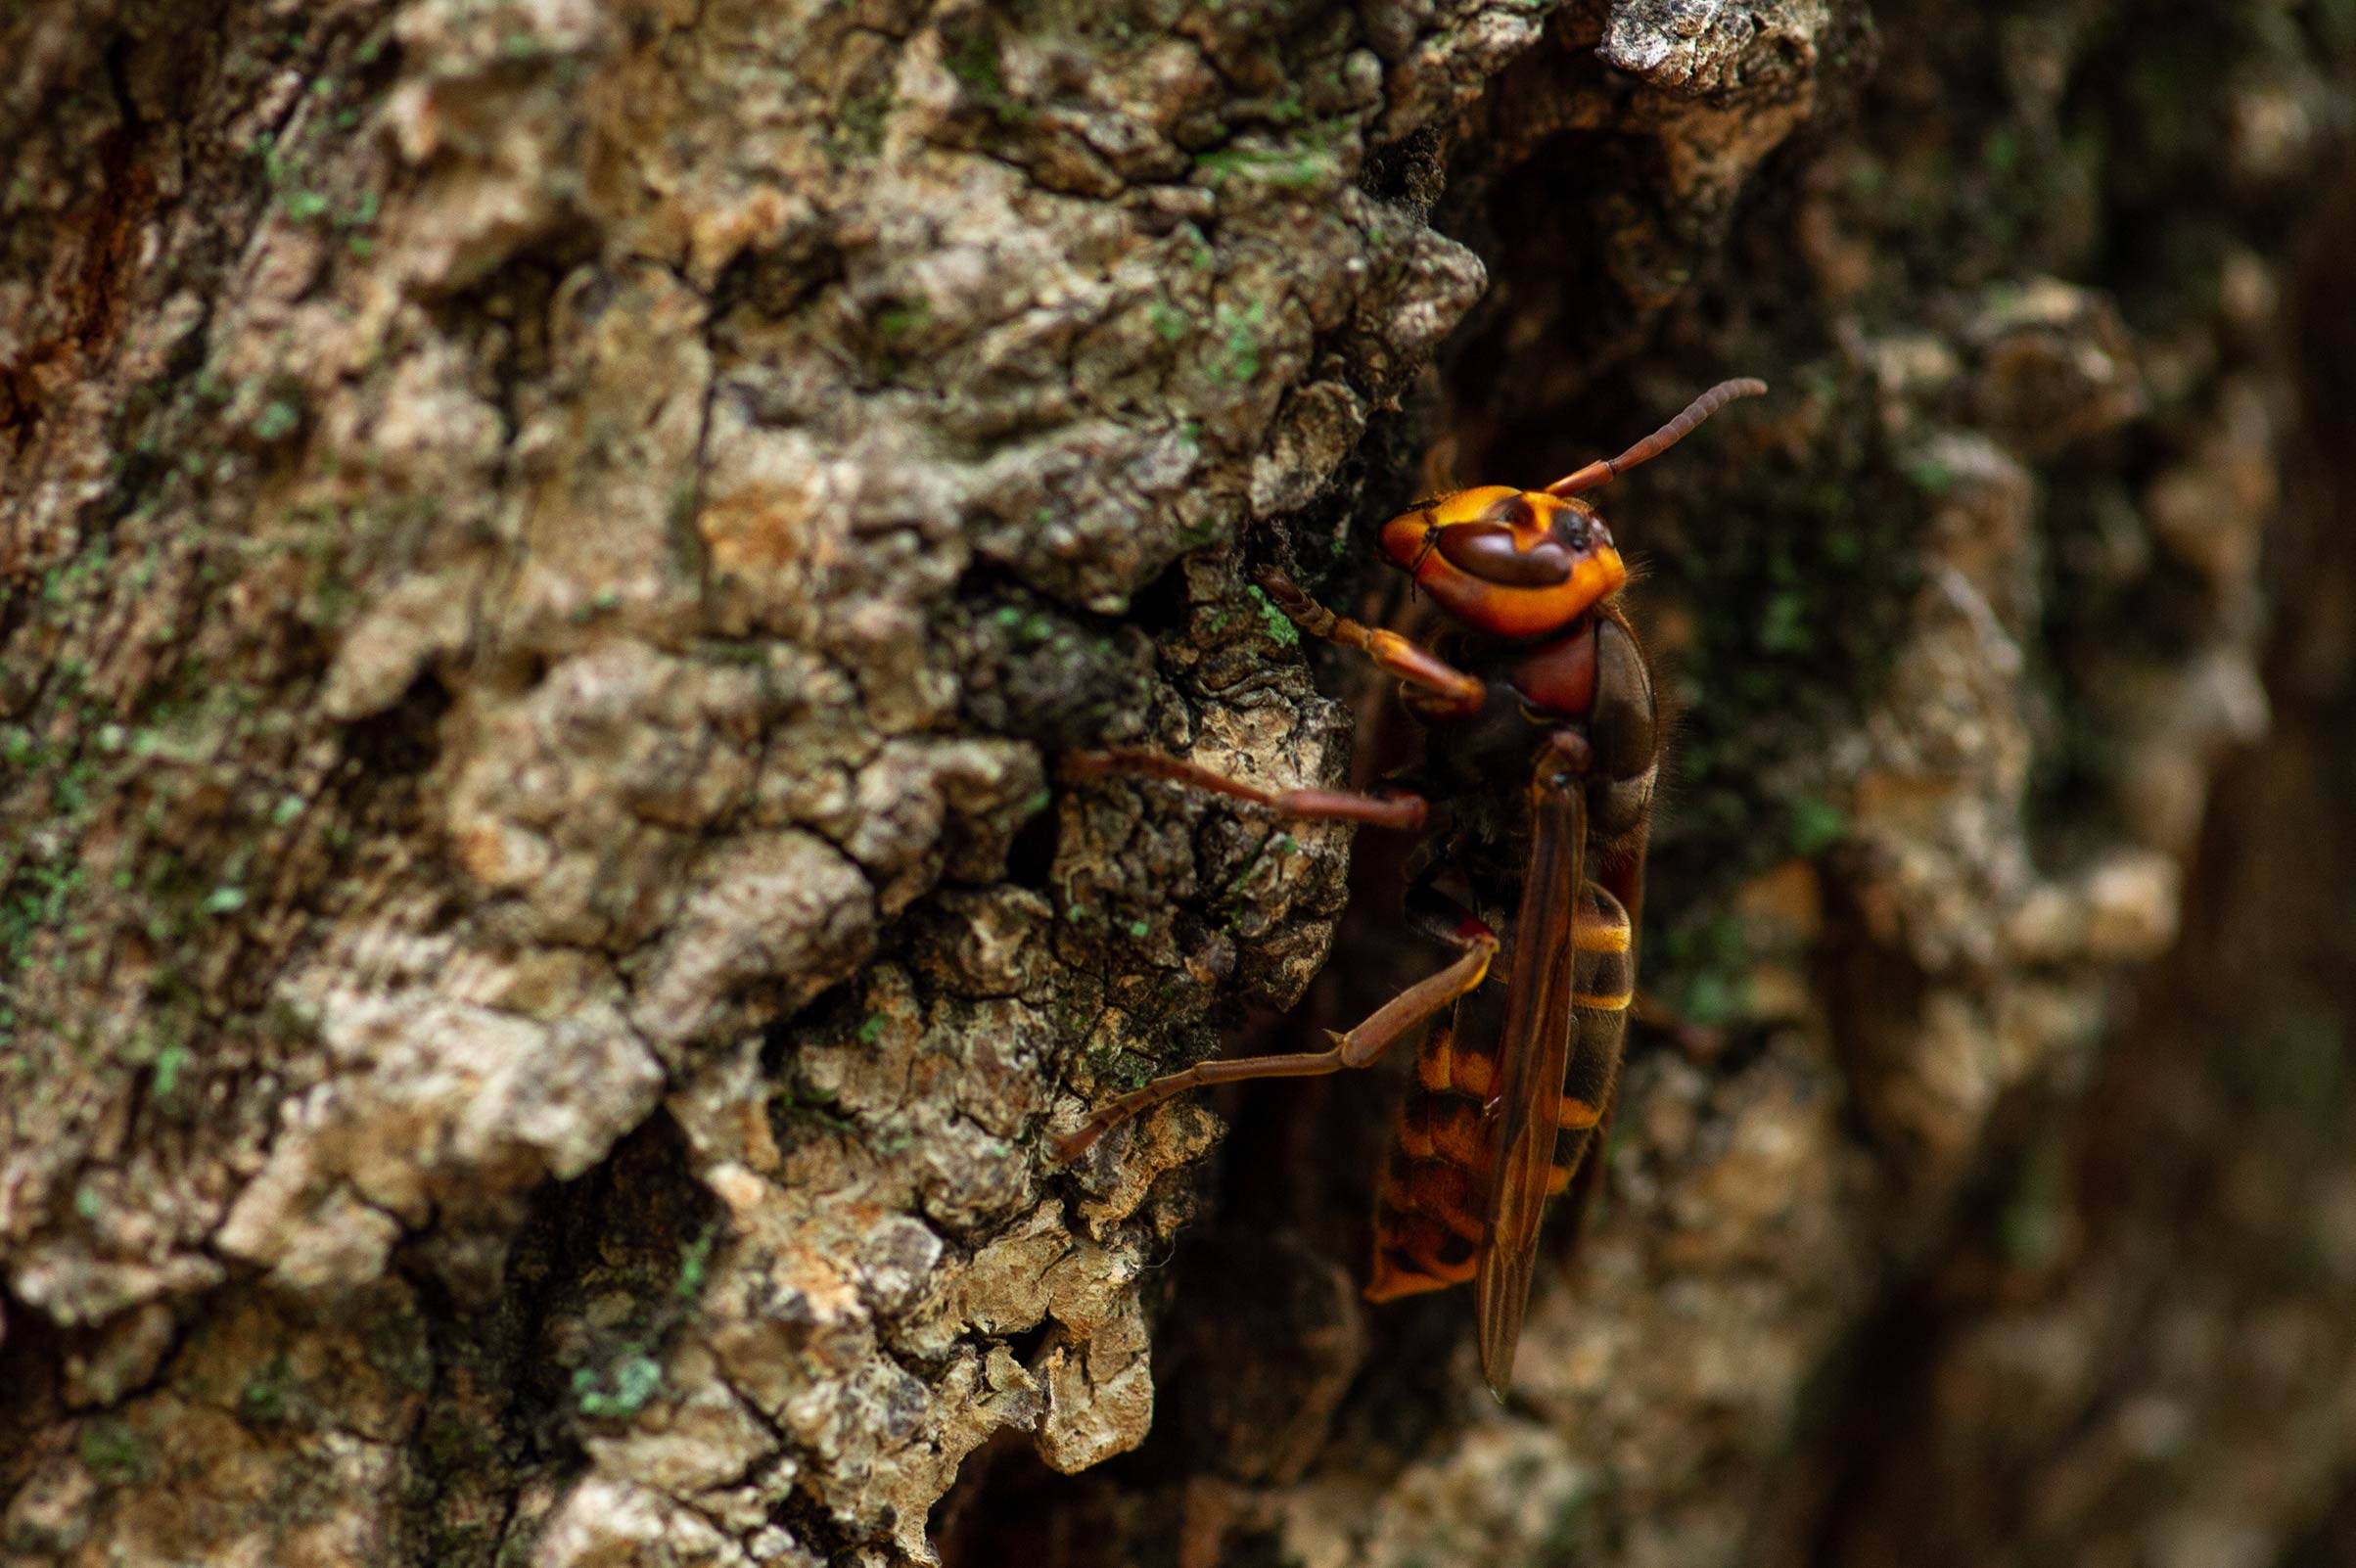 モンスズメバチ 虫の写真と生態なら昆虫写真図鑑 ムシミル